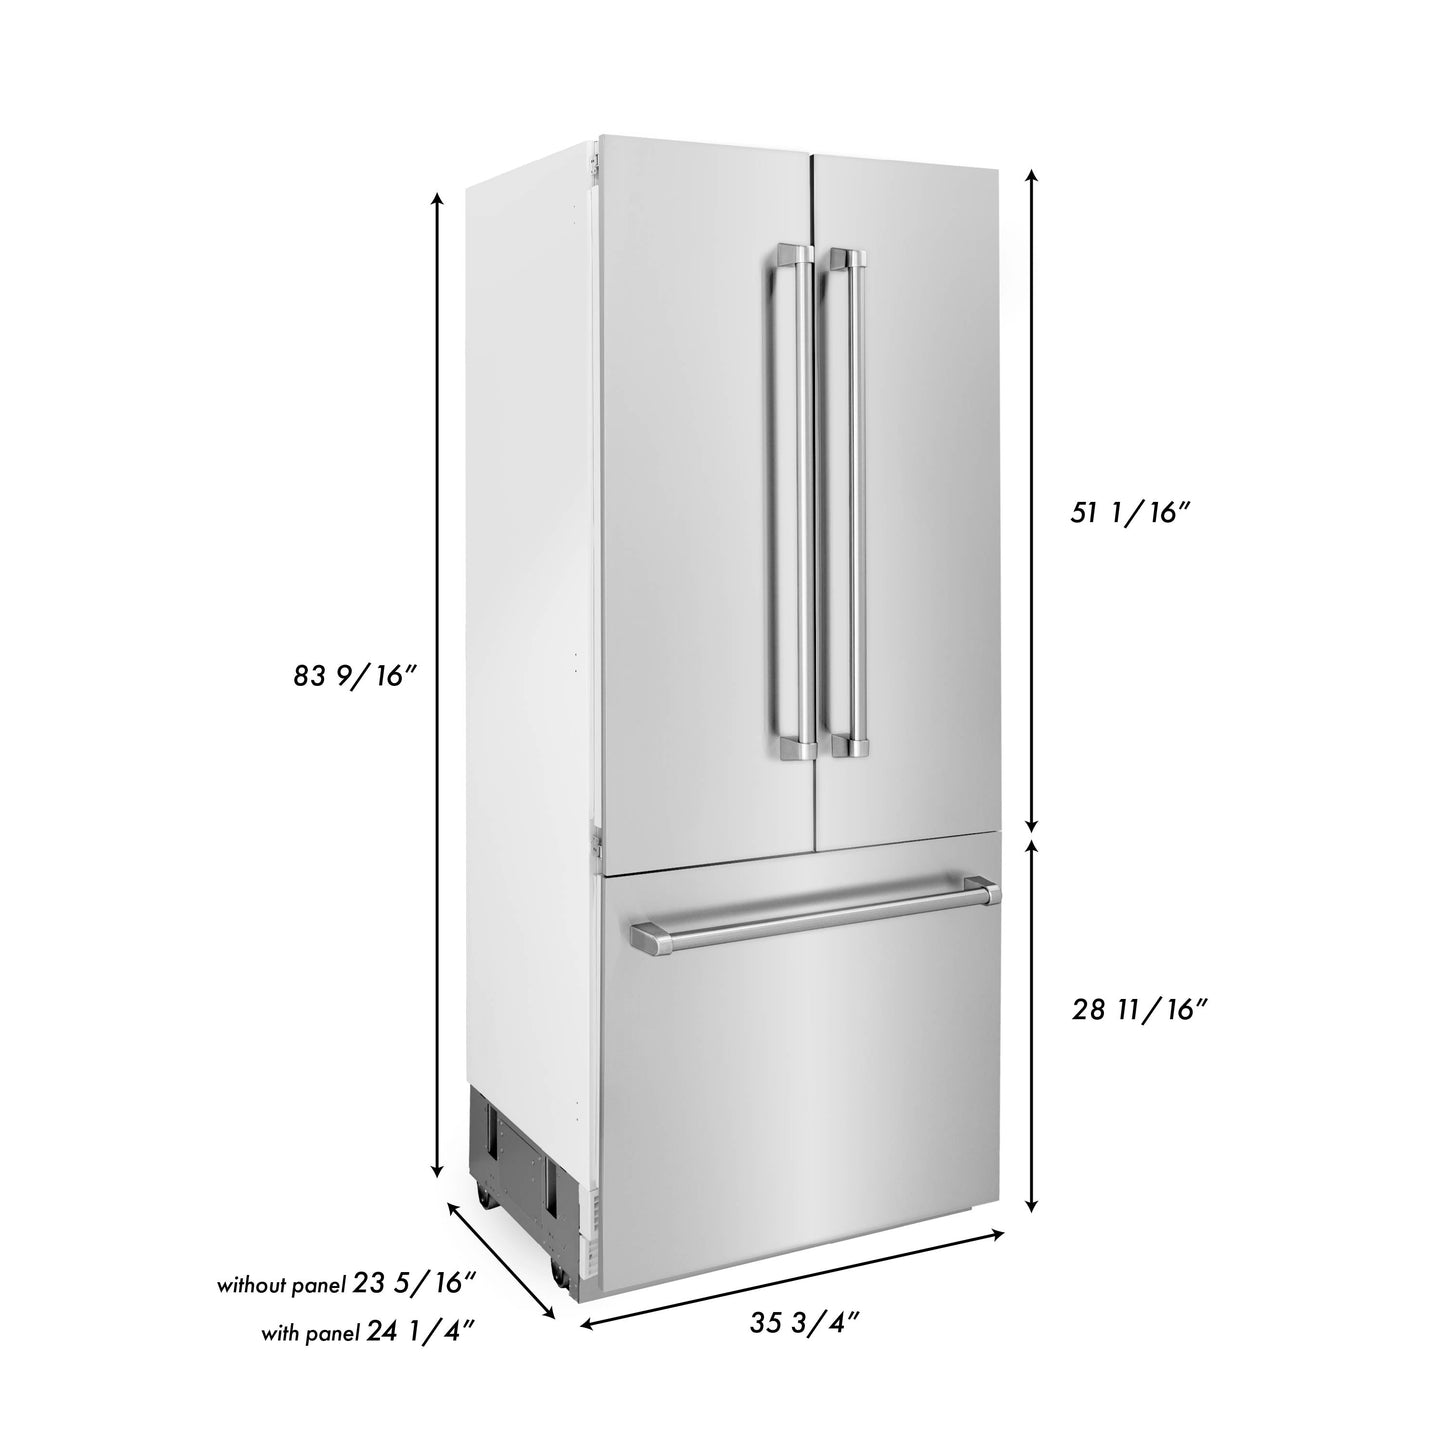 ZLINE 36 In. 19.6 cu. ft. Built-In 3-Door French Door Refrigerator with Internal Water and Ice Dispenser in Stainless Steel, RBIV-304-36